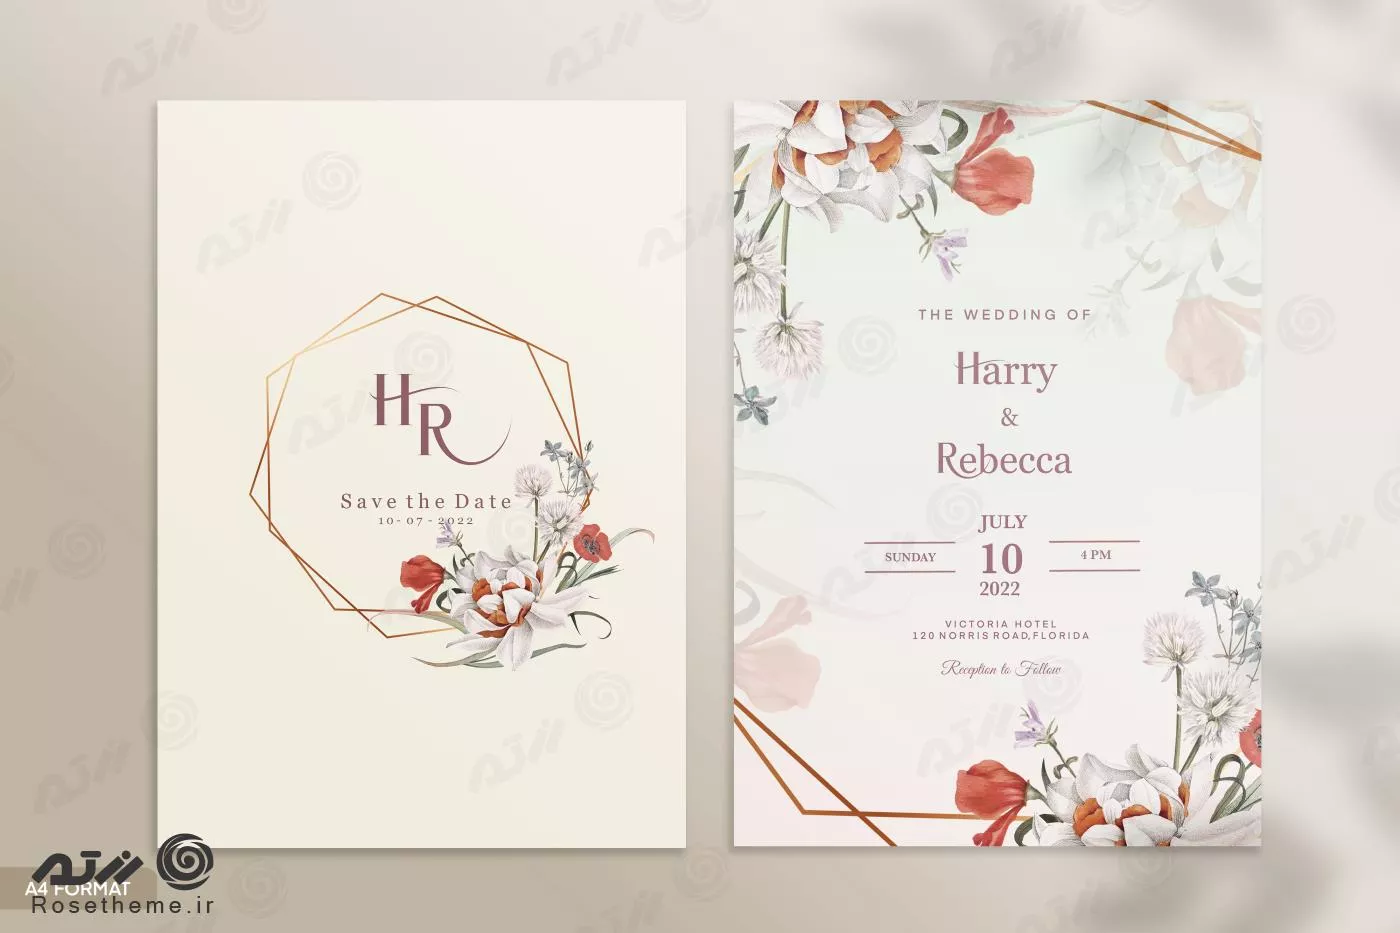 قالب فتوشاپ کارت دعوت عروسی با زمینه زرد روشن و سفید با حاشیه گل های رز قرمز و سفید و برگهای سبز و اشکال هندسی فایل psd لایه باز 21379